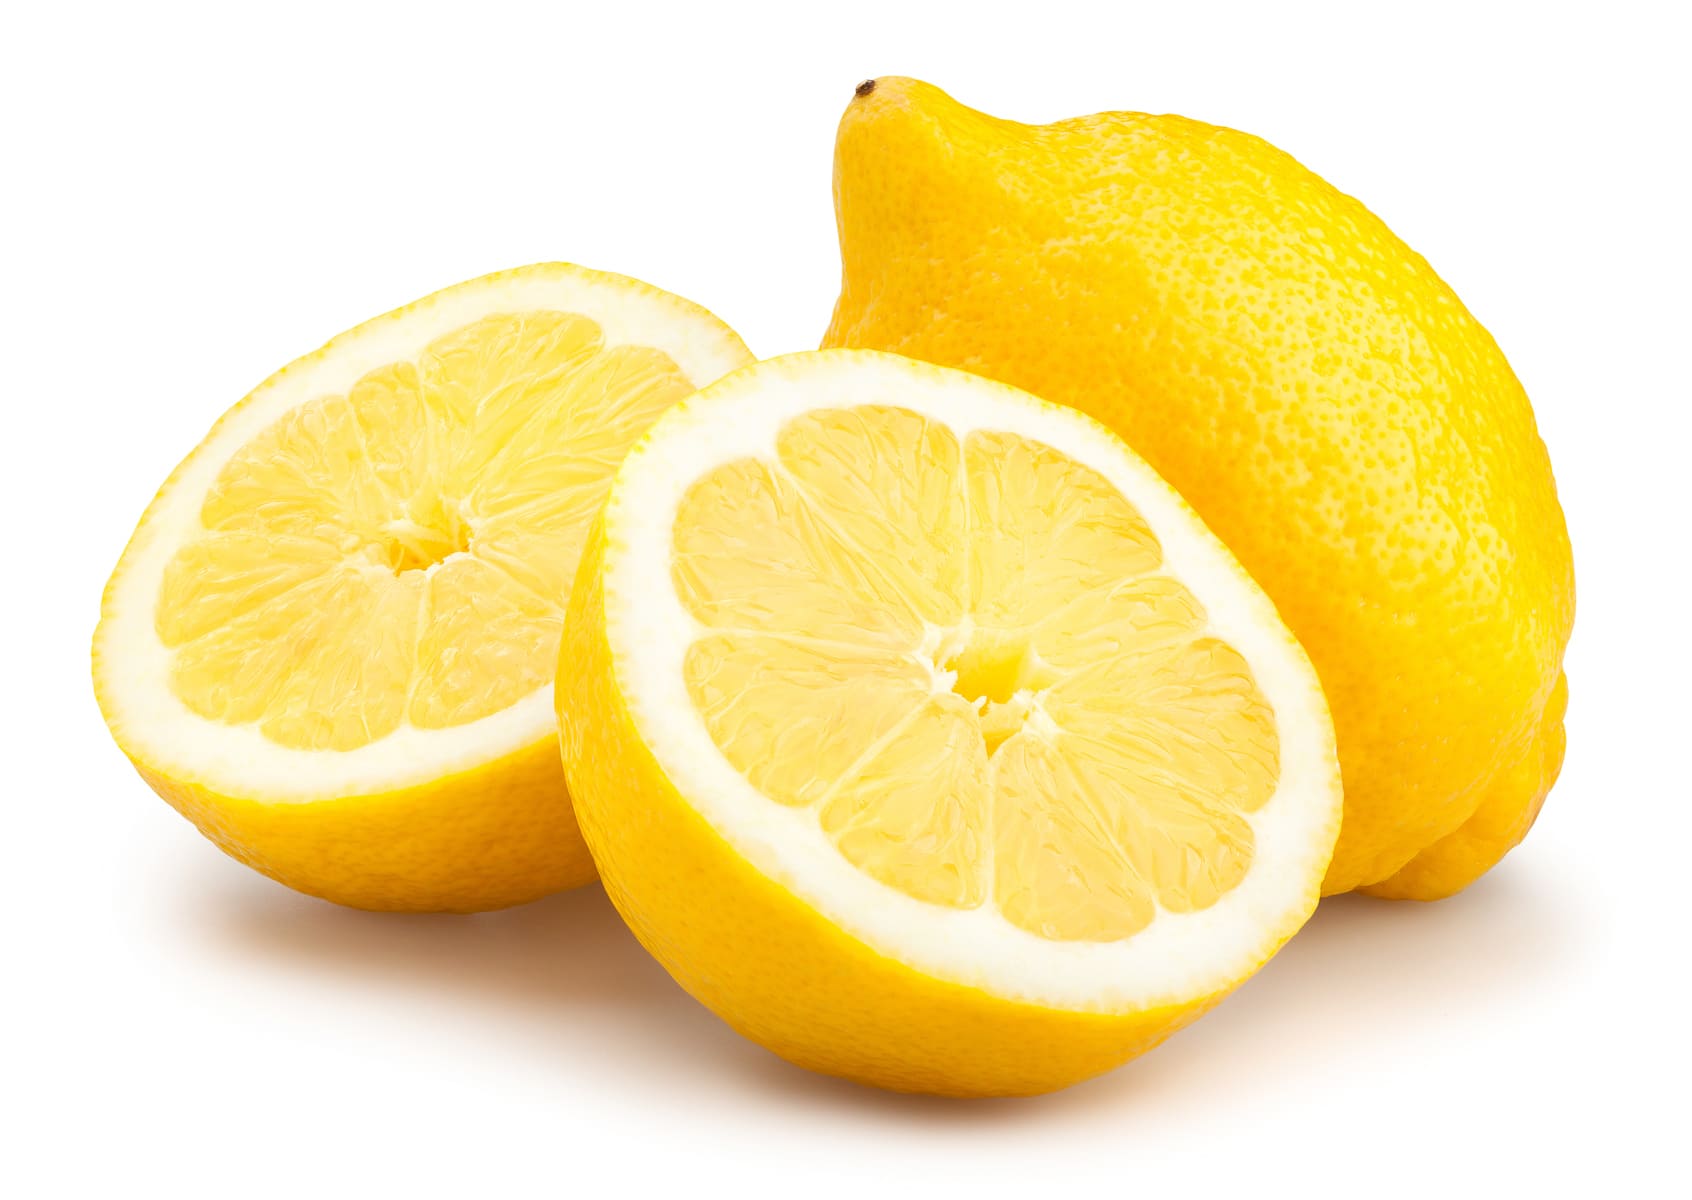 فوائد الليمون الأخضر للبشرة